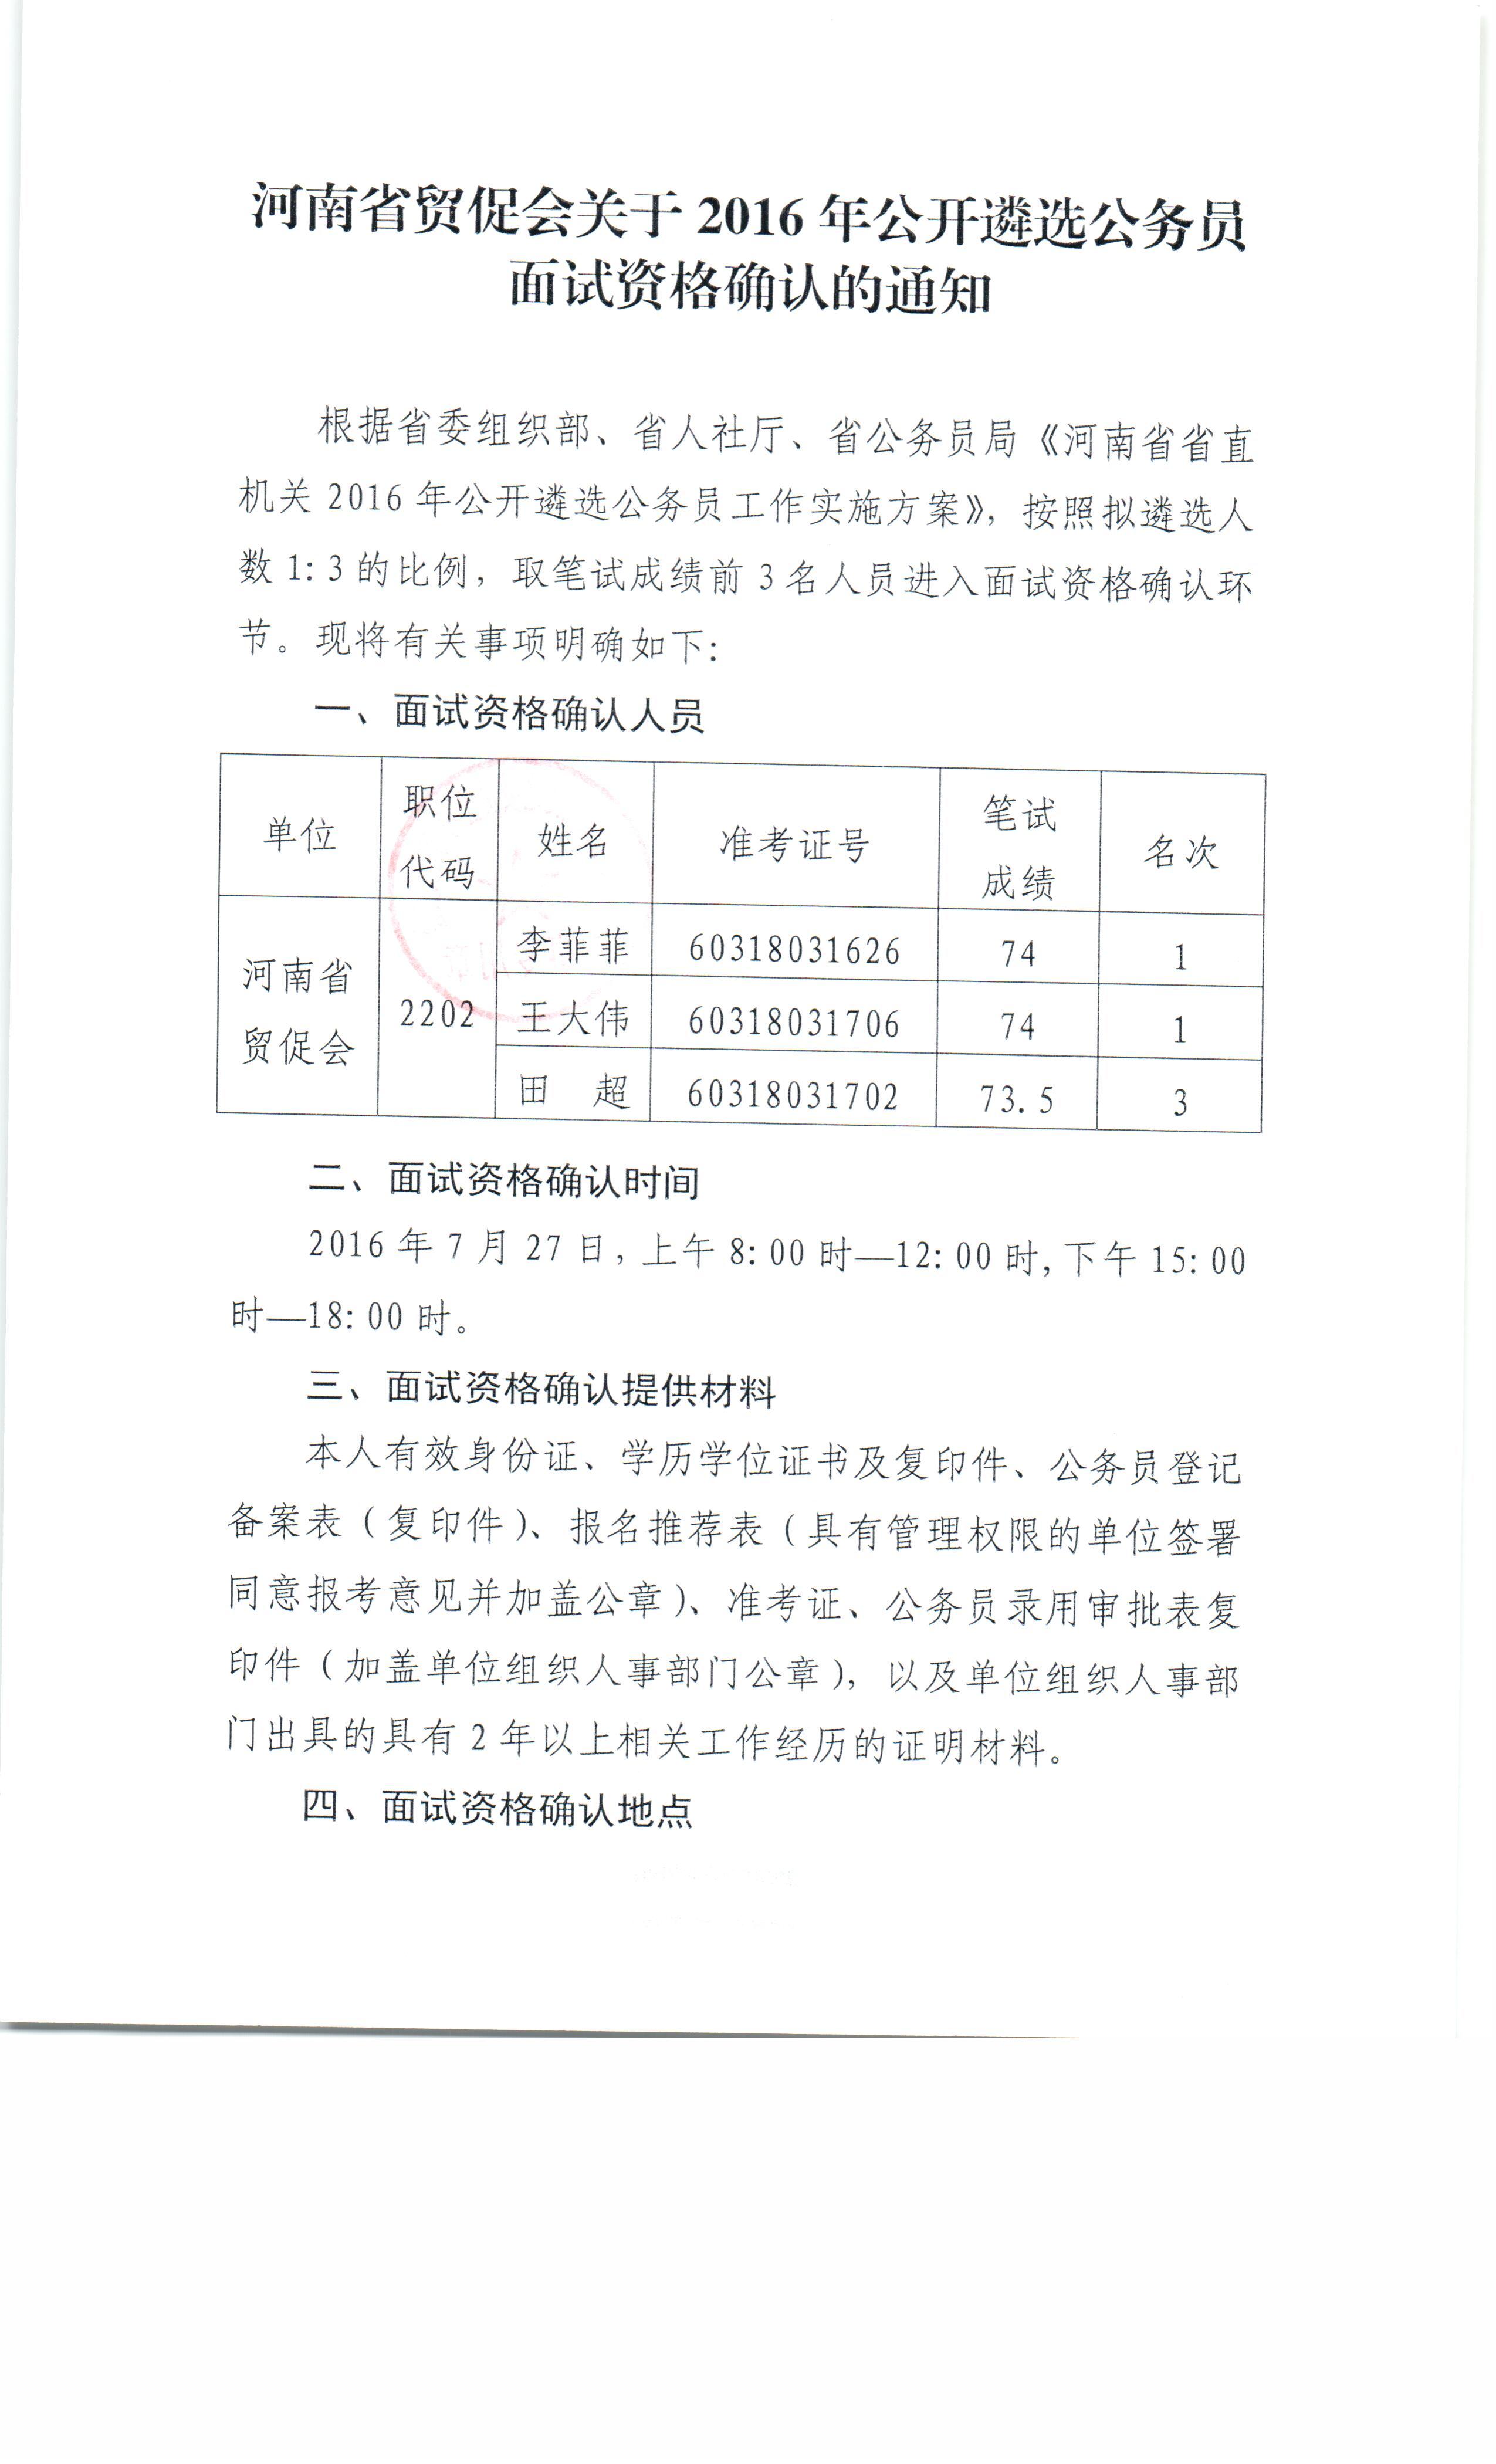 河南省贸促会关于2016年公开遴选公务员面试资格确认的通知.jpg